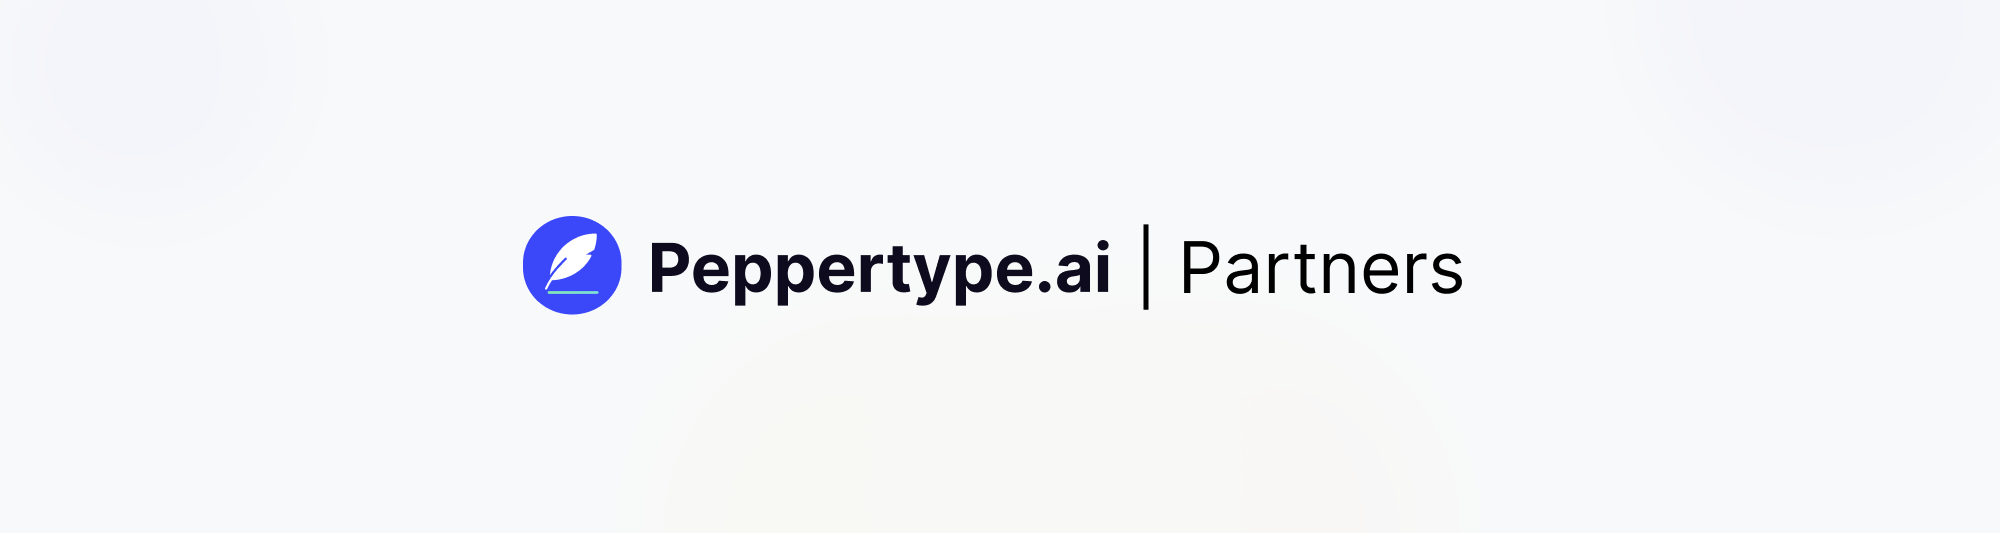 Peppertype.ai Partner Program